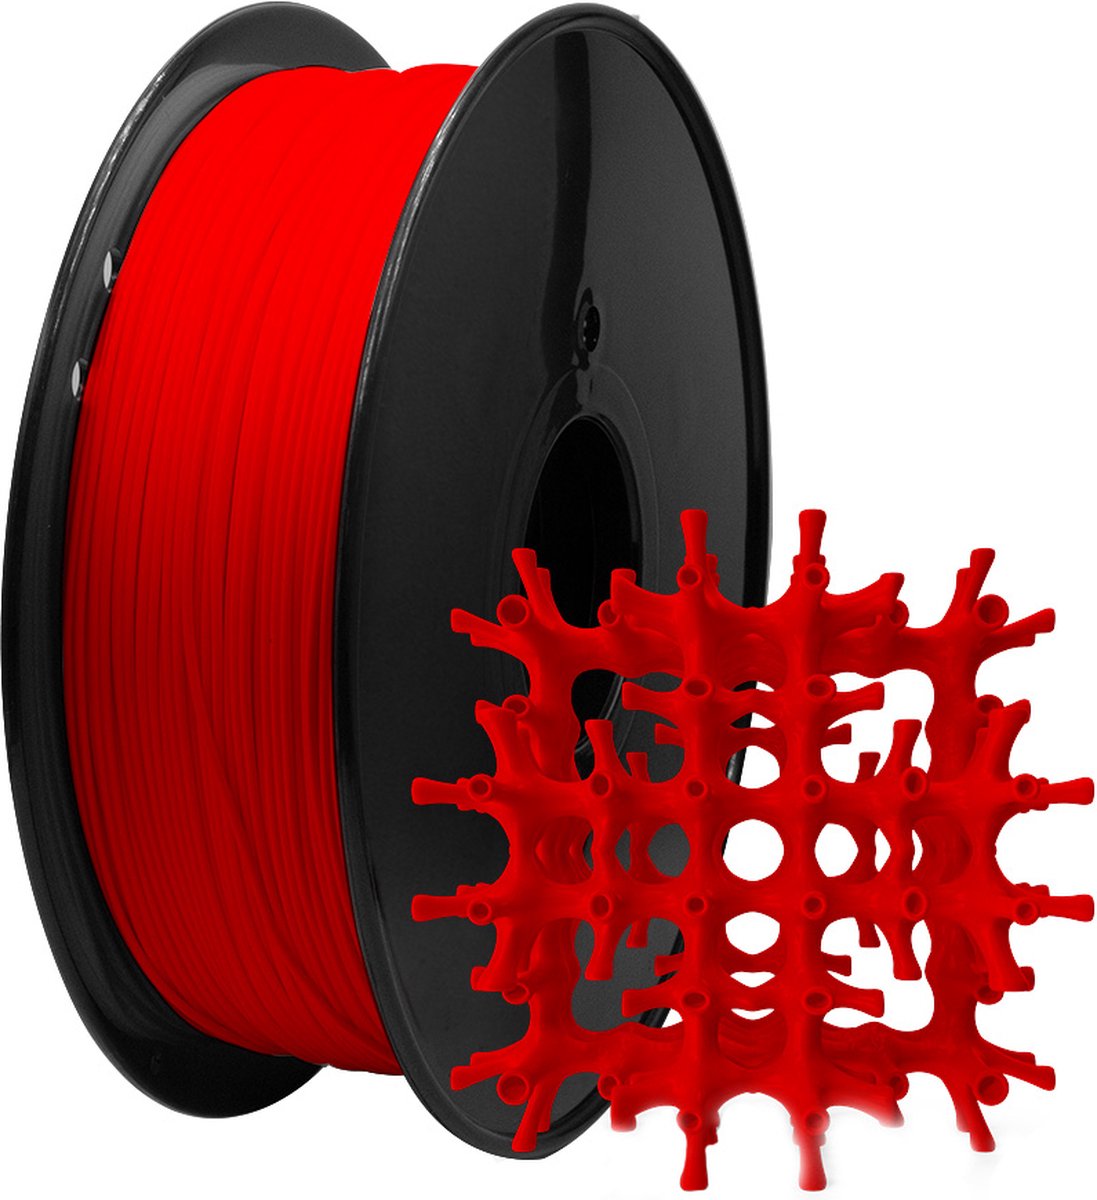 MMOBIEL PLA Filament 3D Printer 1.75mm - Lengte 330m - 200 x 200mm - 1kg Spoel - Rood